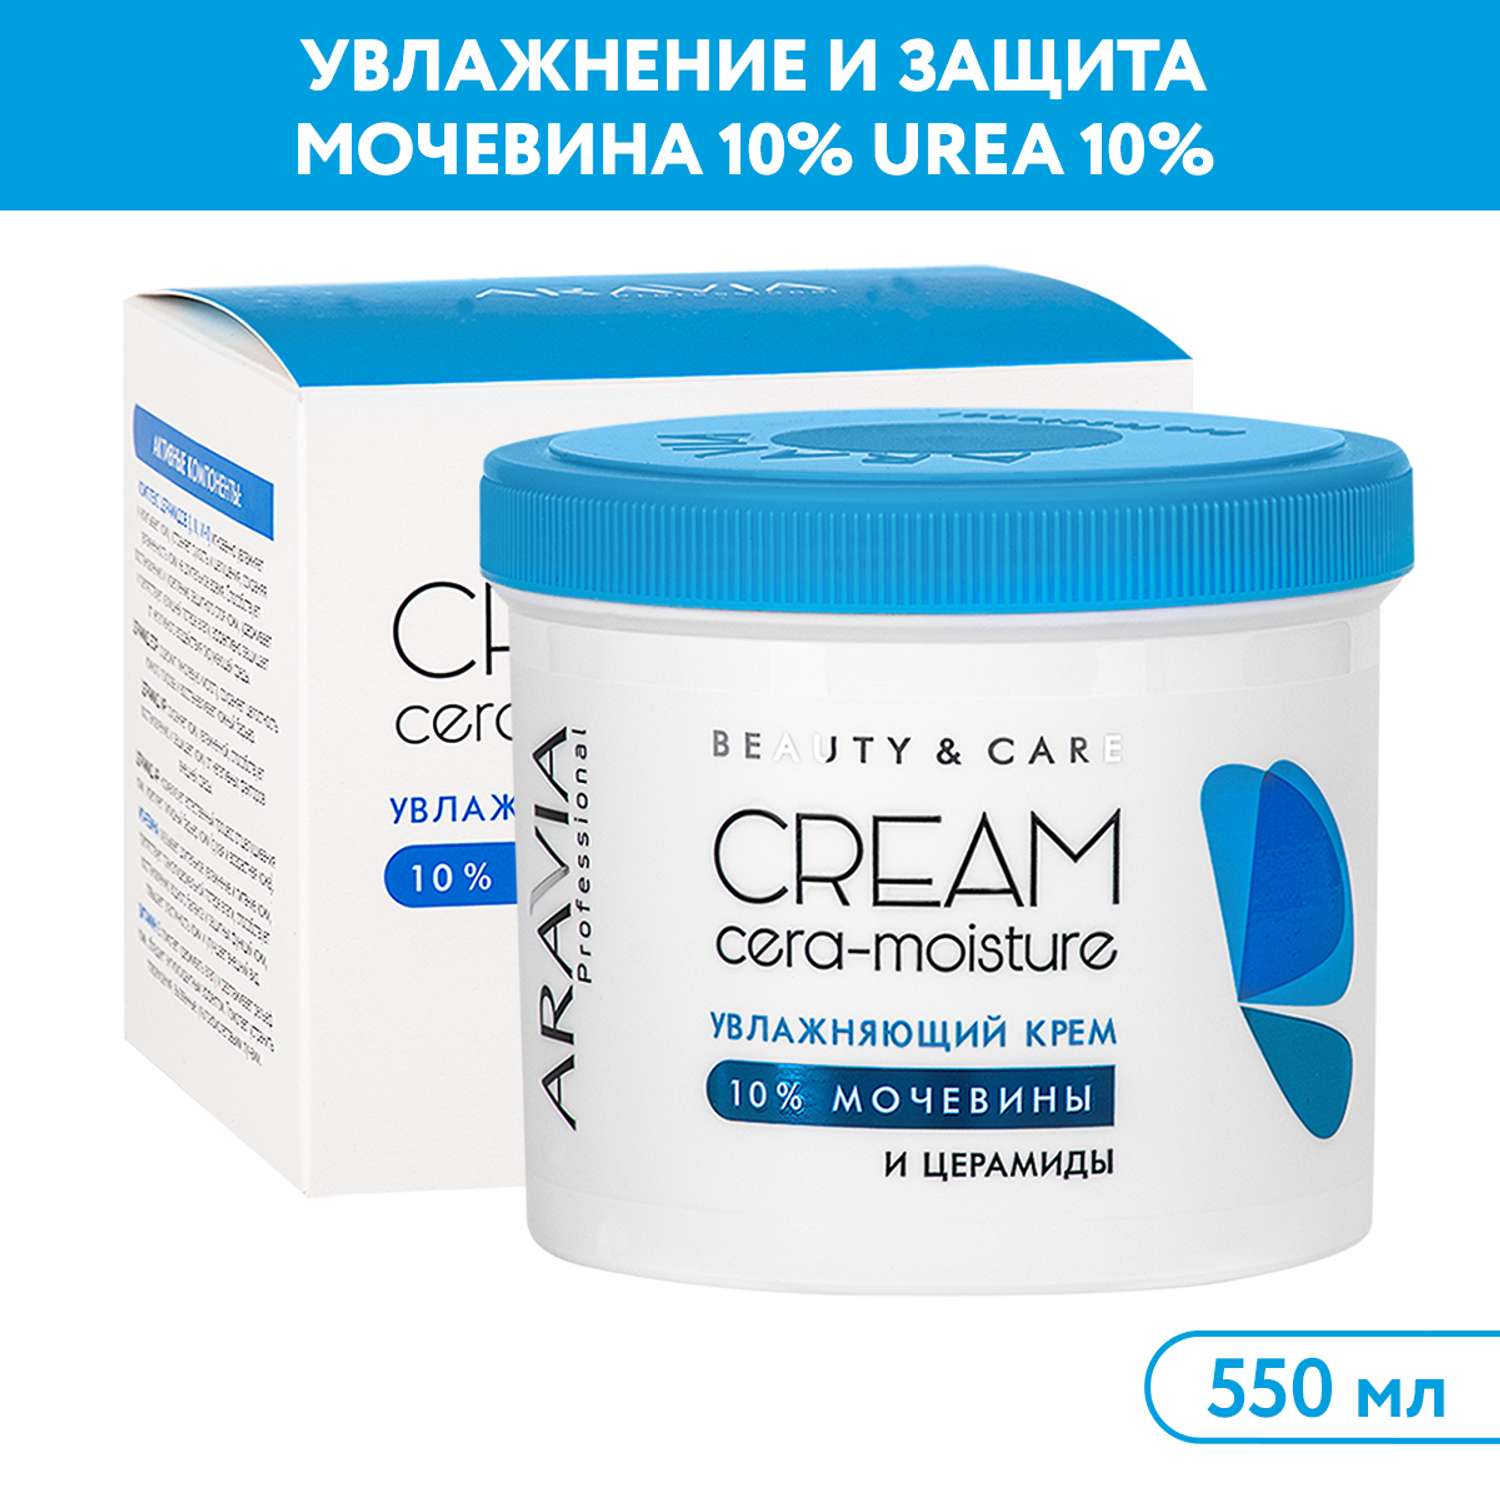 Крем для лица ARAVIA Professional увлажняющий с церамидами и мочевиной 10% Cera-moisture Cream - фото 1